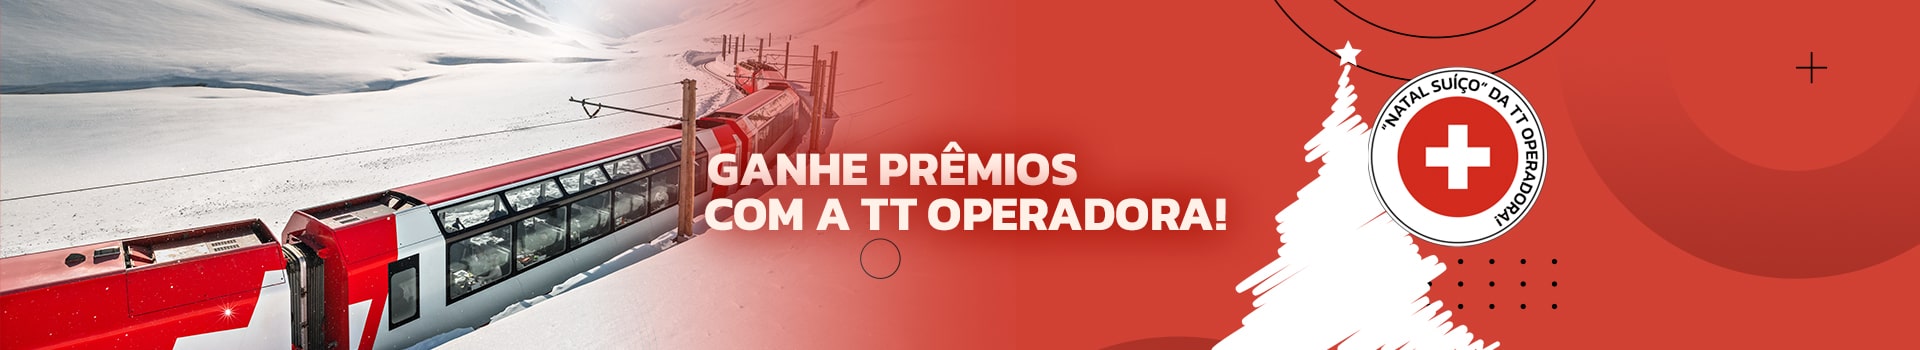 TT Operadora premiará os agentes de viagens que mais venderem os trens da Renfe (Espanha), durante o período da campanha